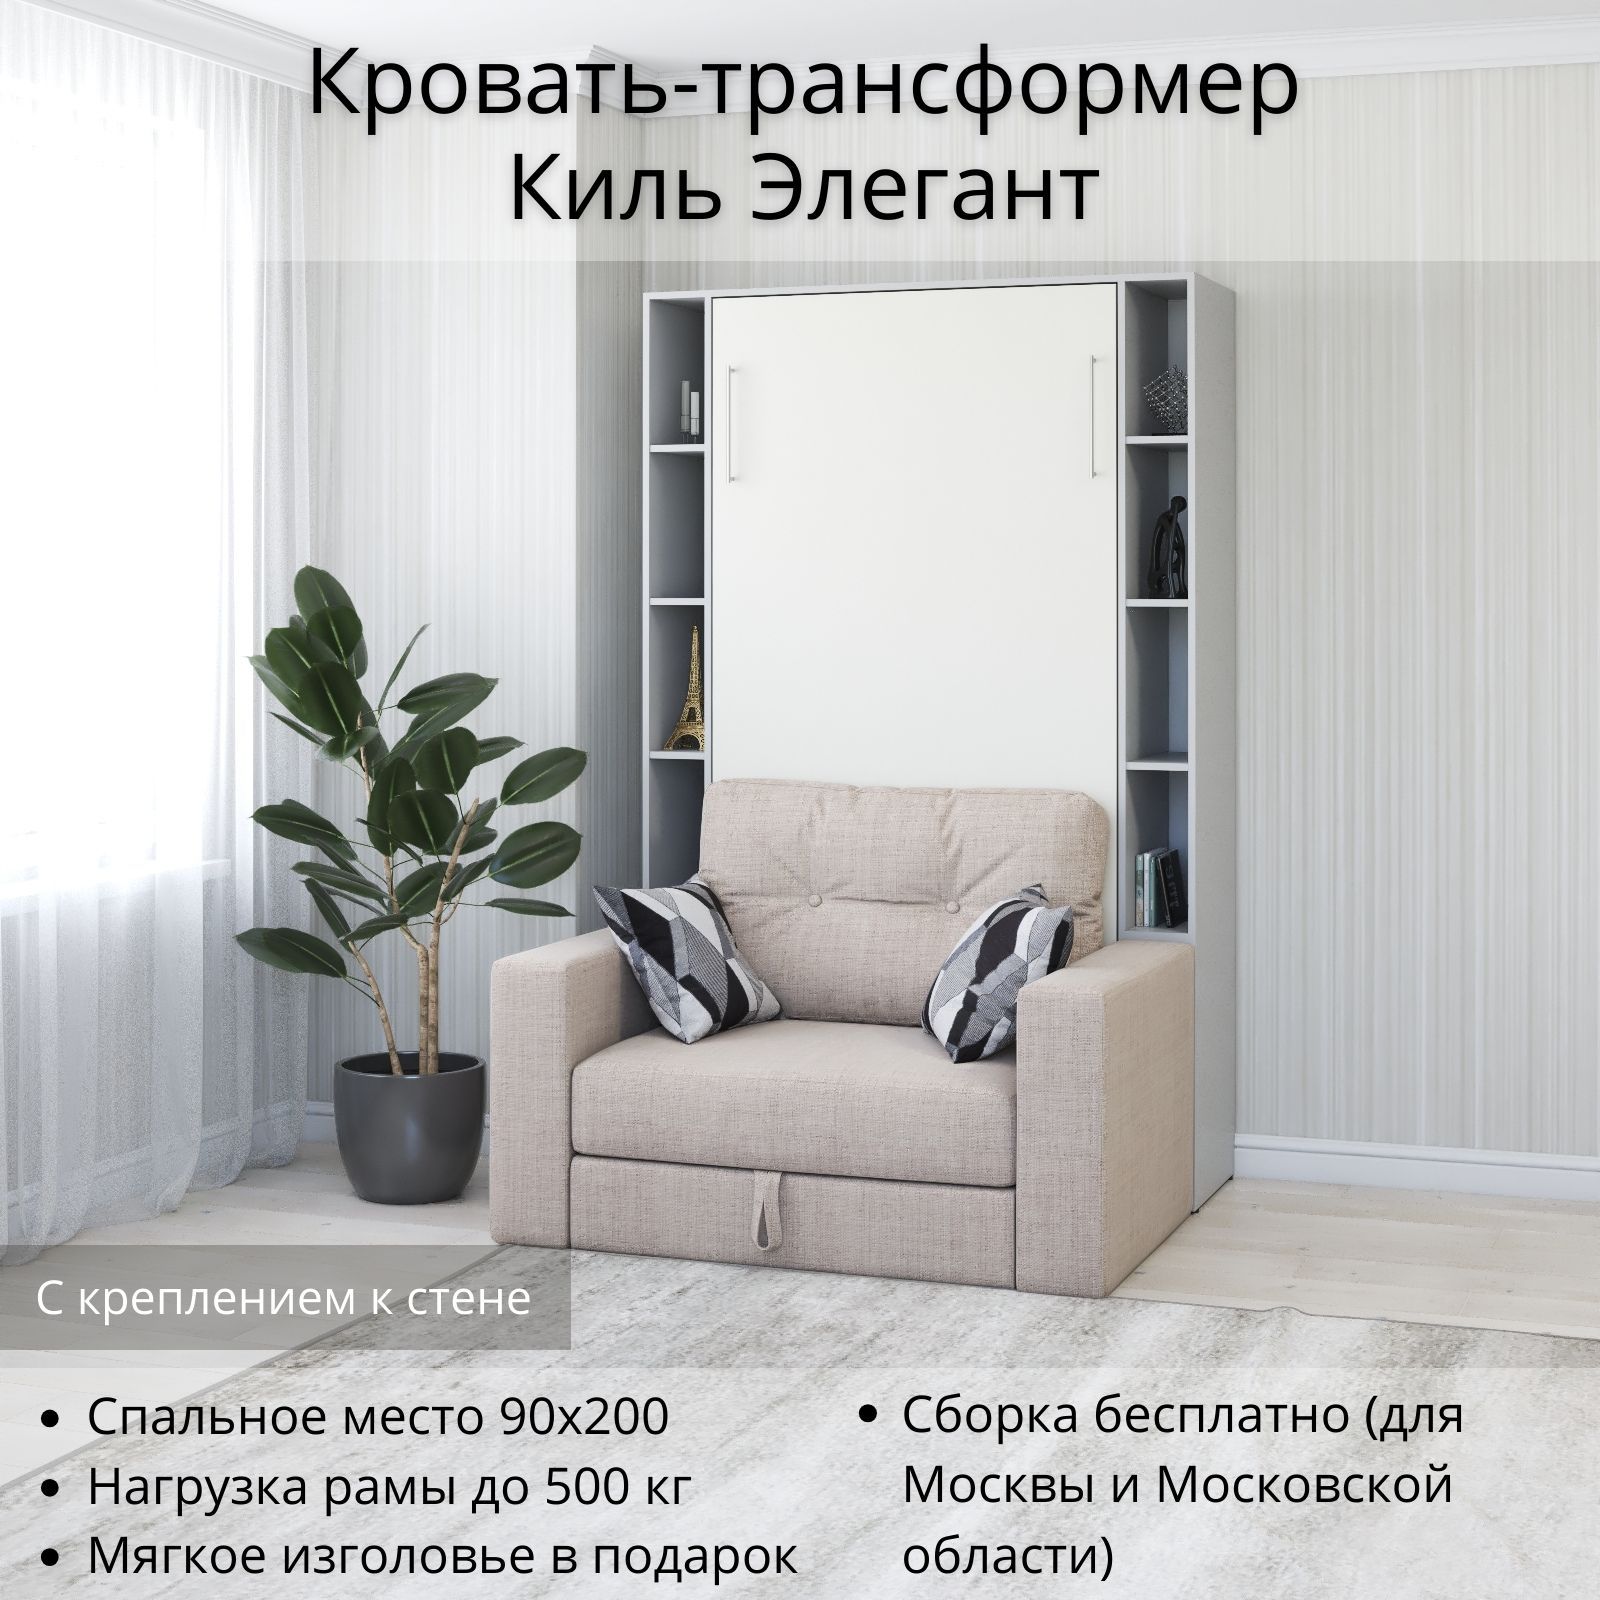 Sofas&Decor – мебельное производство | мебель на заказ в Санкт-Петербурге